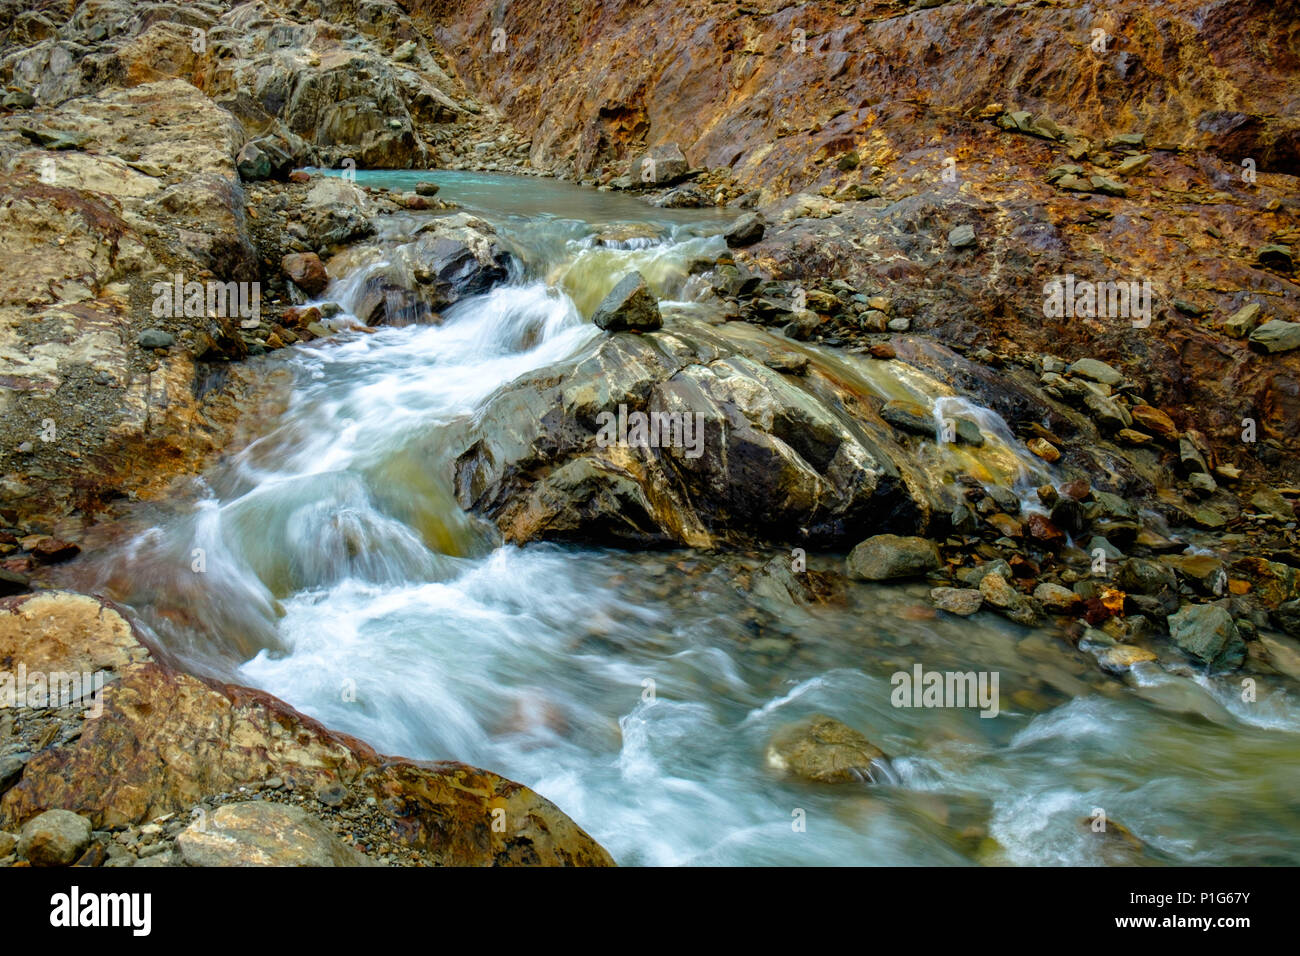 L'eau de fonte glaciaire descend entre de superbes rochers colorés vers la 'Laguna de los Témpanos' près d'Ushuaia. Il ressemble à un paysage martien. Banque D'Images